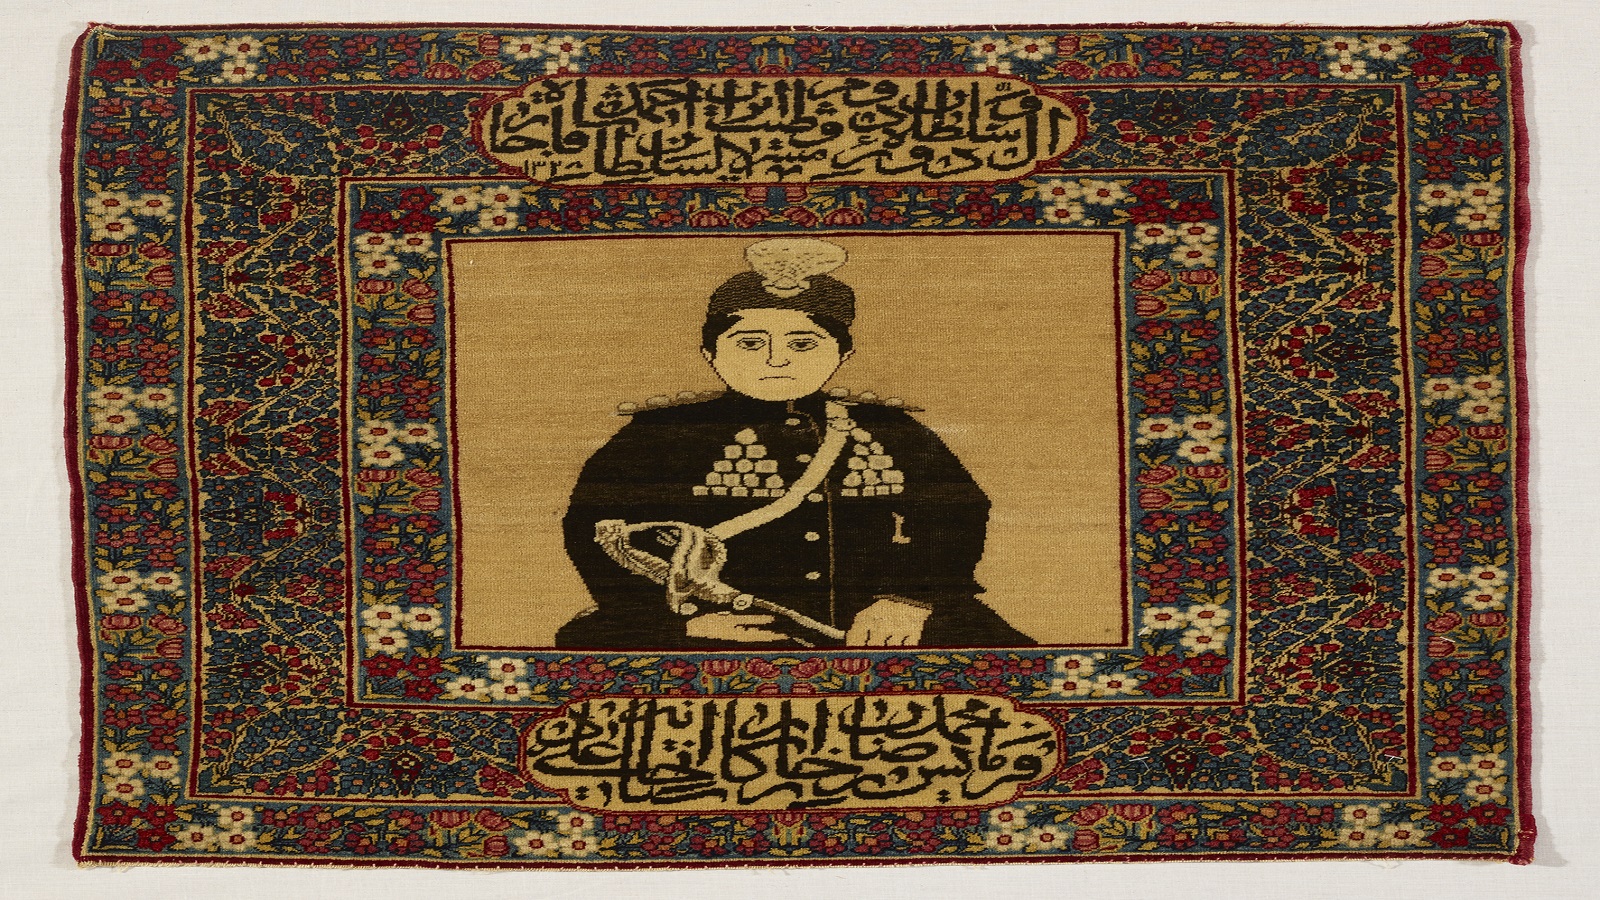 سجادة ملكية من توقيع أستاذ علي أُنجزت سنة 1910، وتزيّن وسطها صورة شخصية لآخر الملوك القاجار، سلطان أحمد شاه.